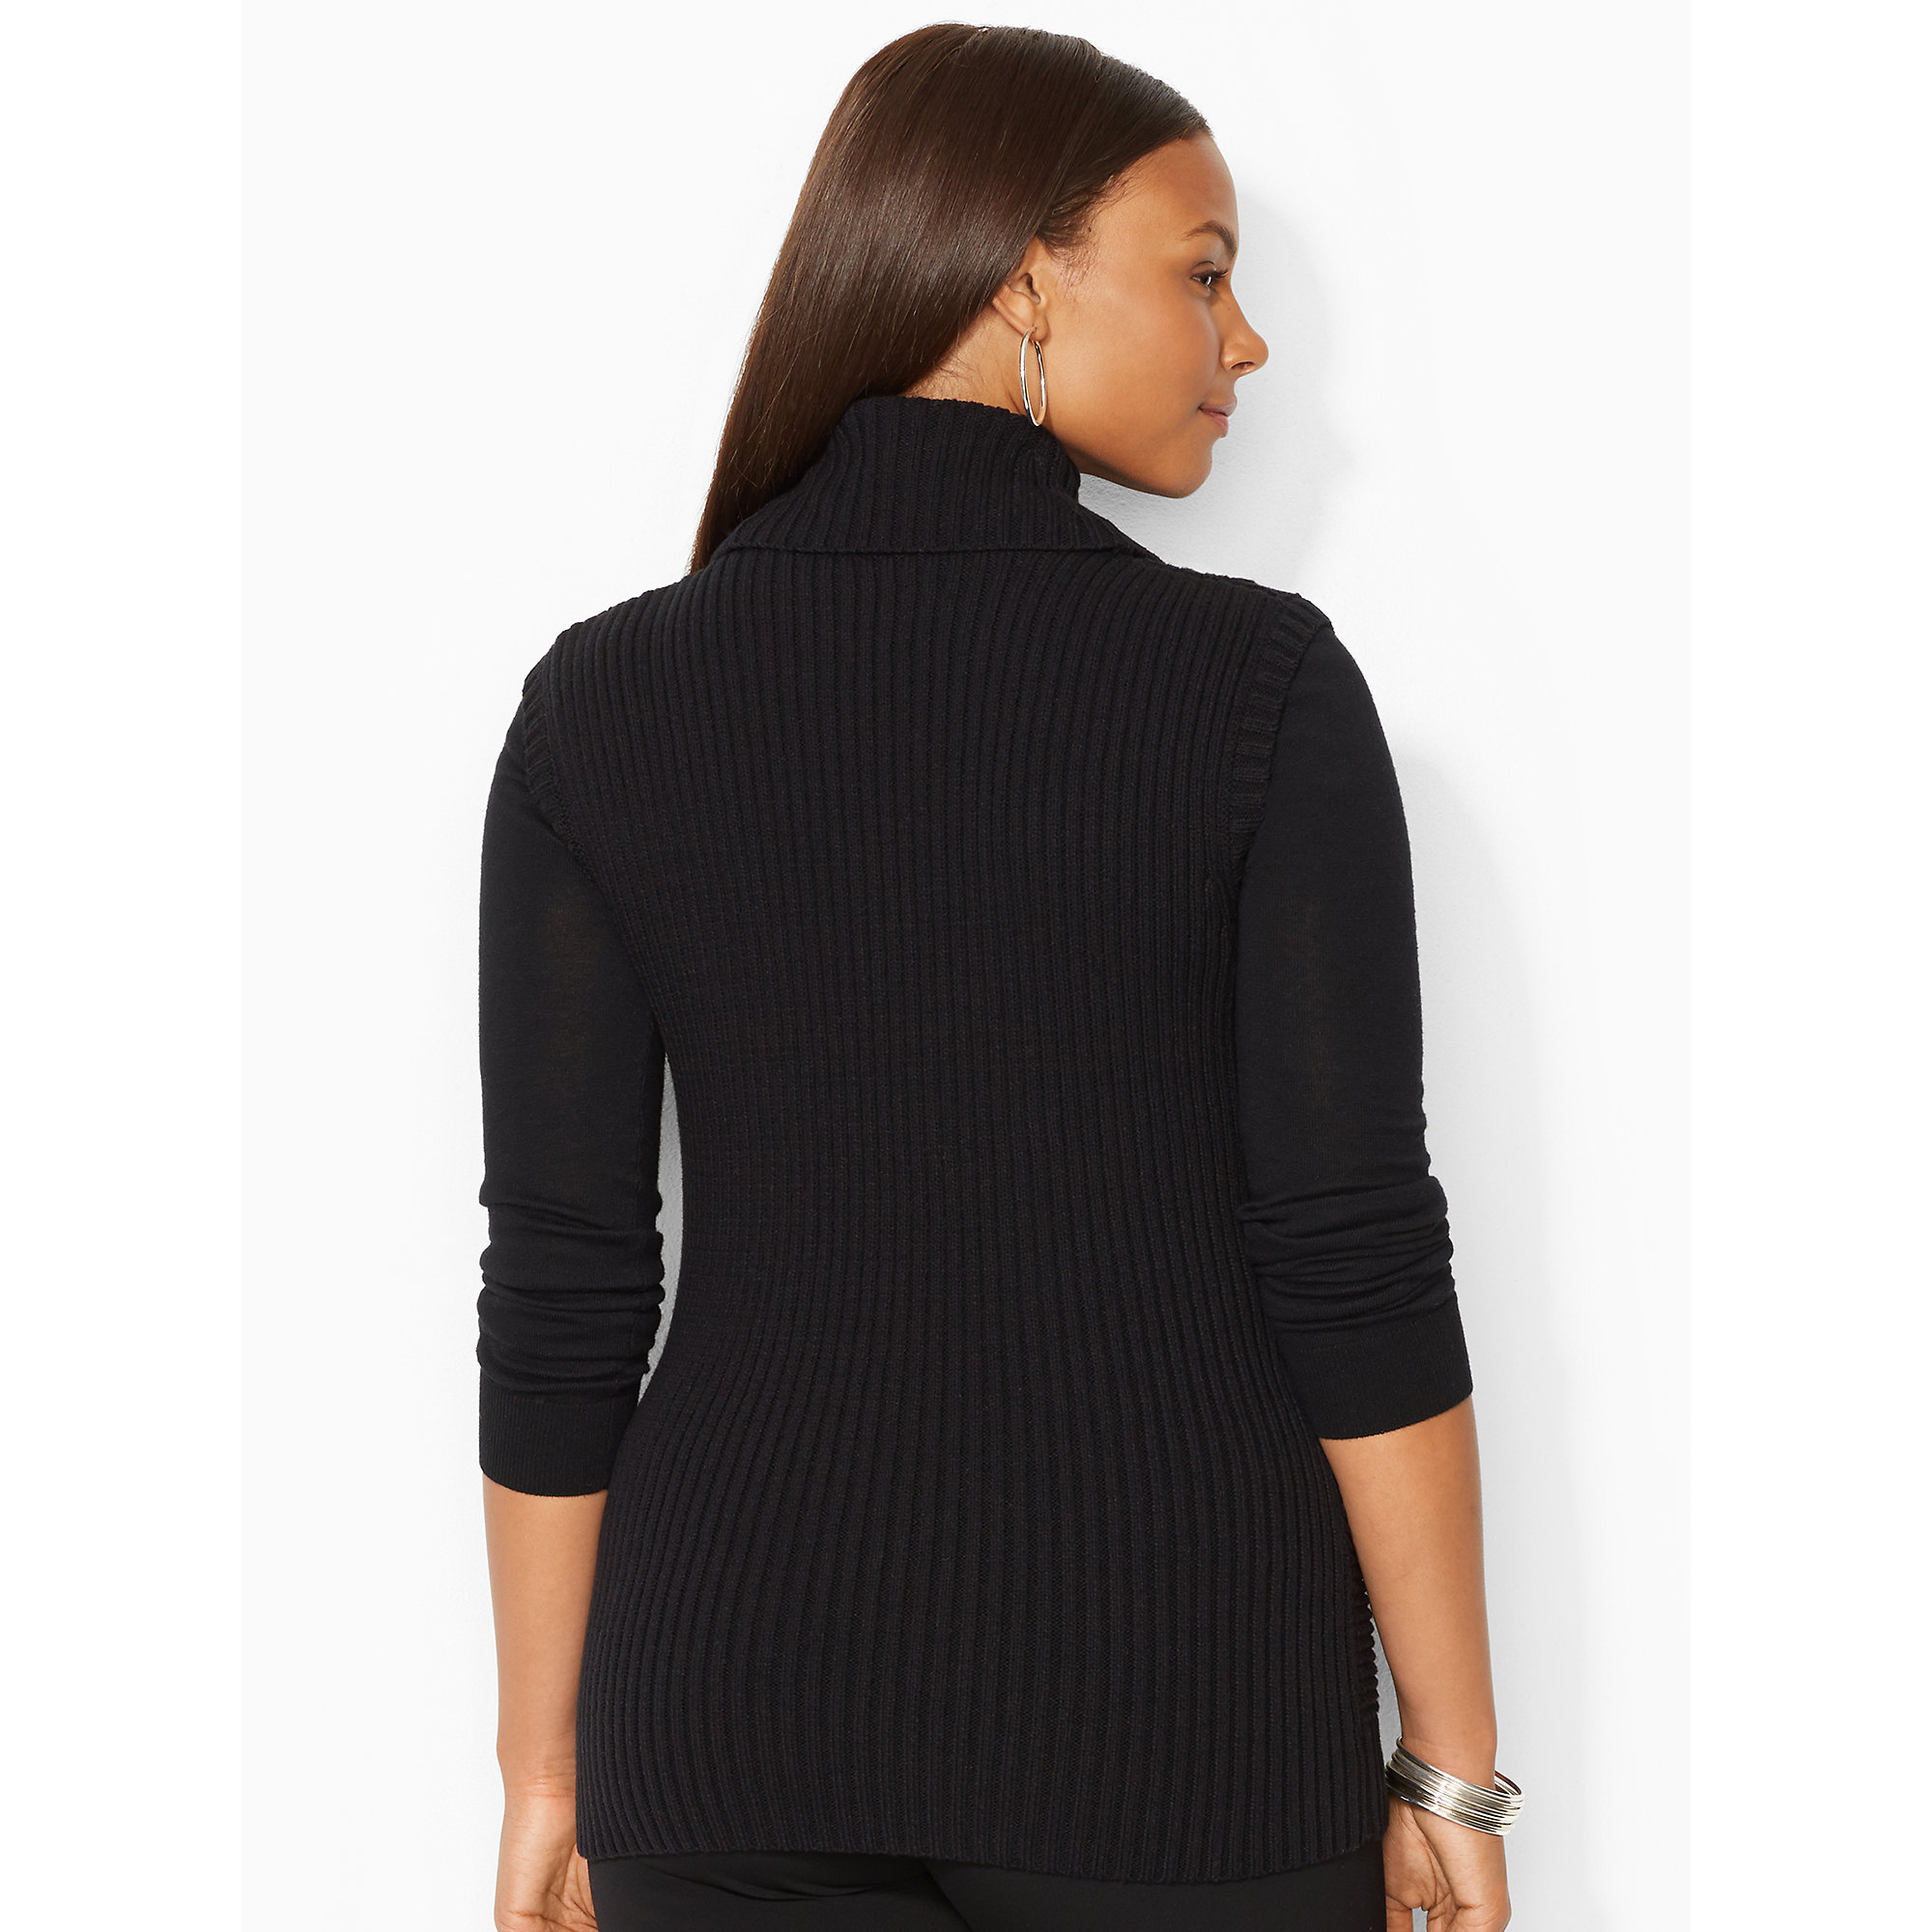 black collar sweater2019 black collar sweater for women